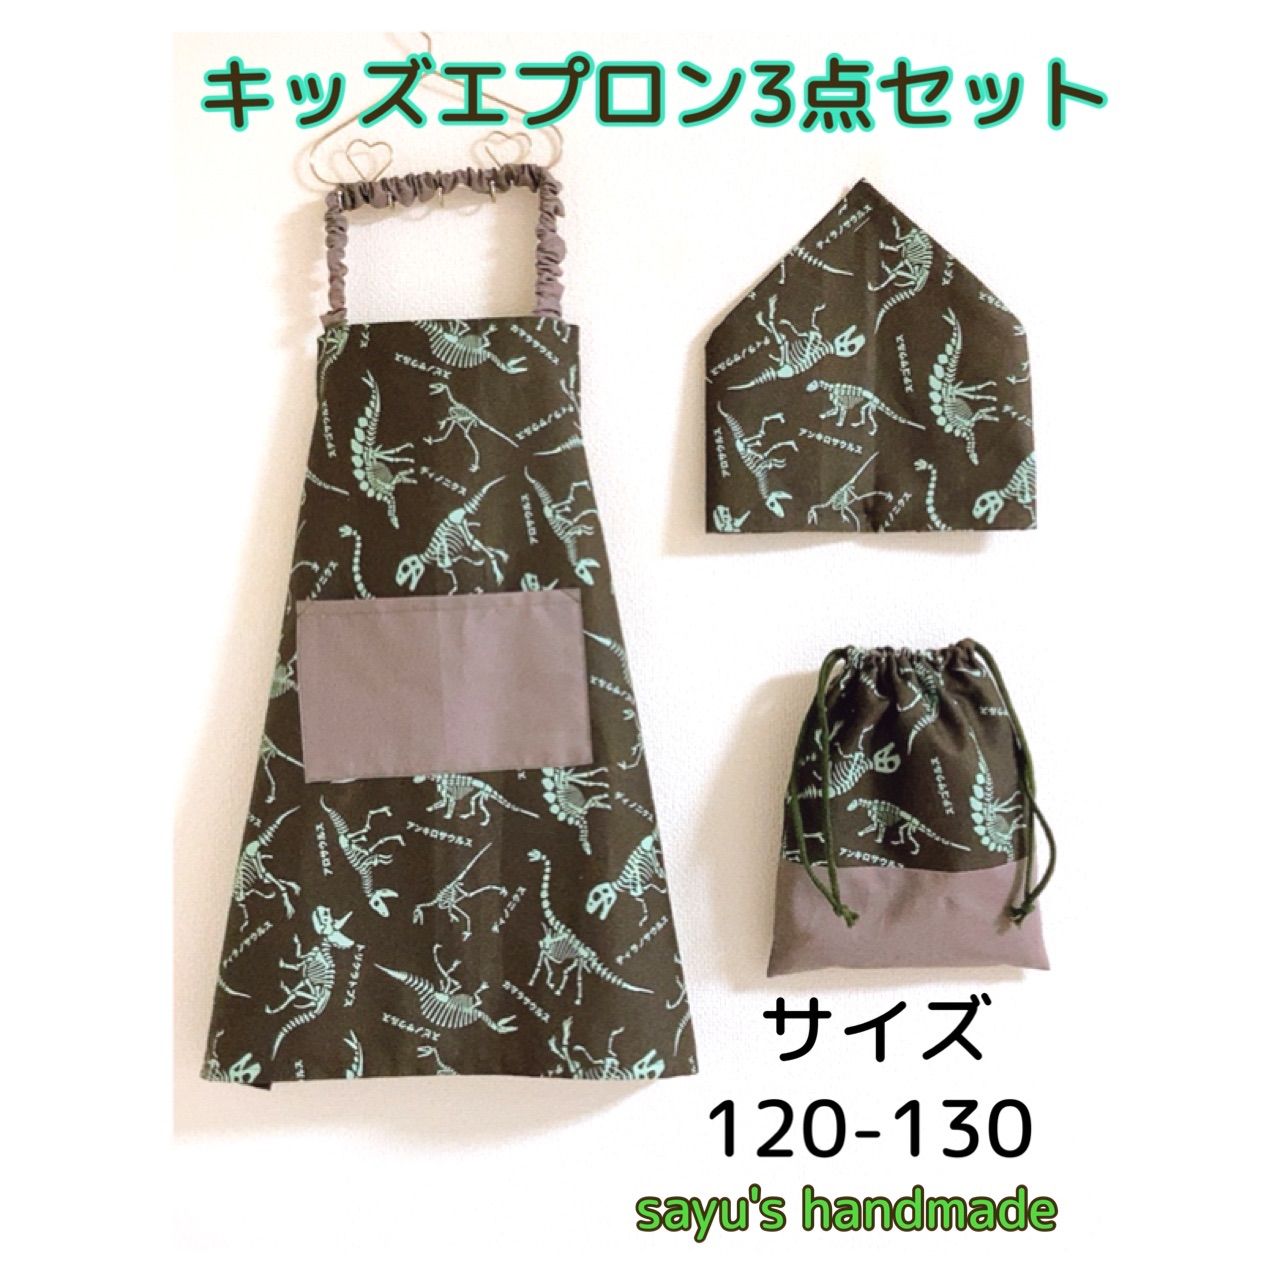 エプロン 三角巾 巾着袋 セット 恐竜 ハンドメイド - エプロン